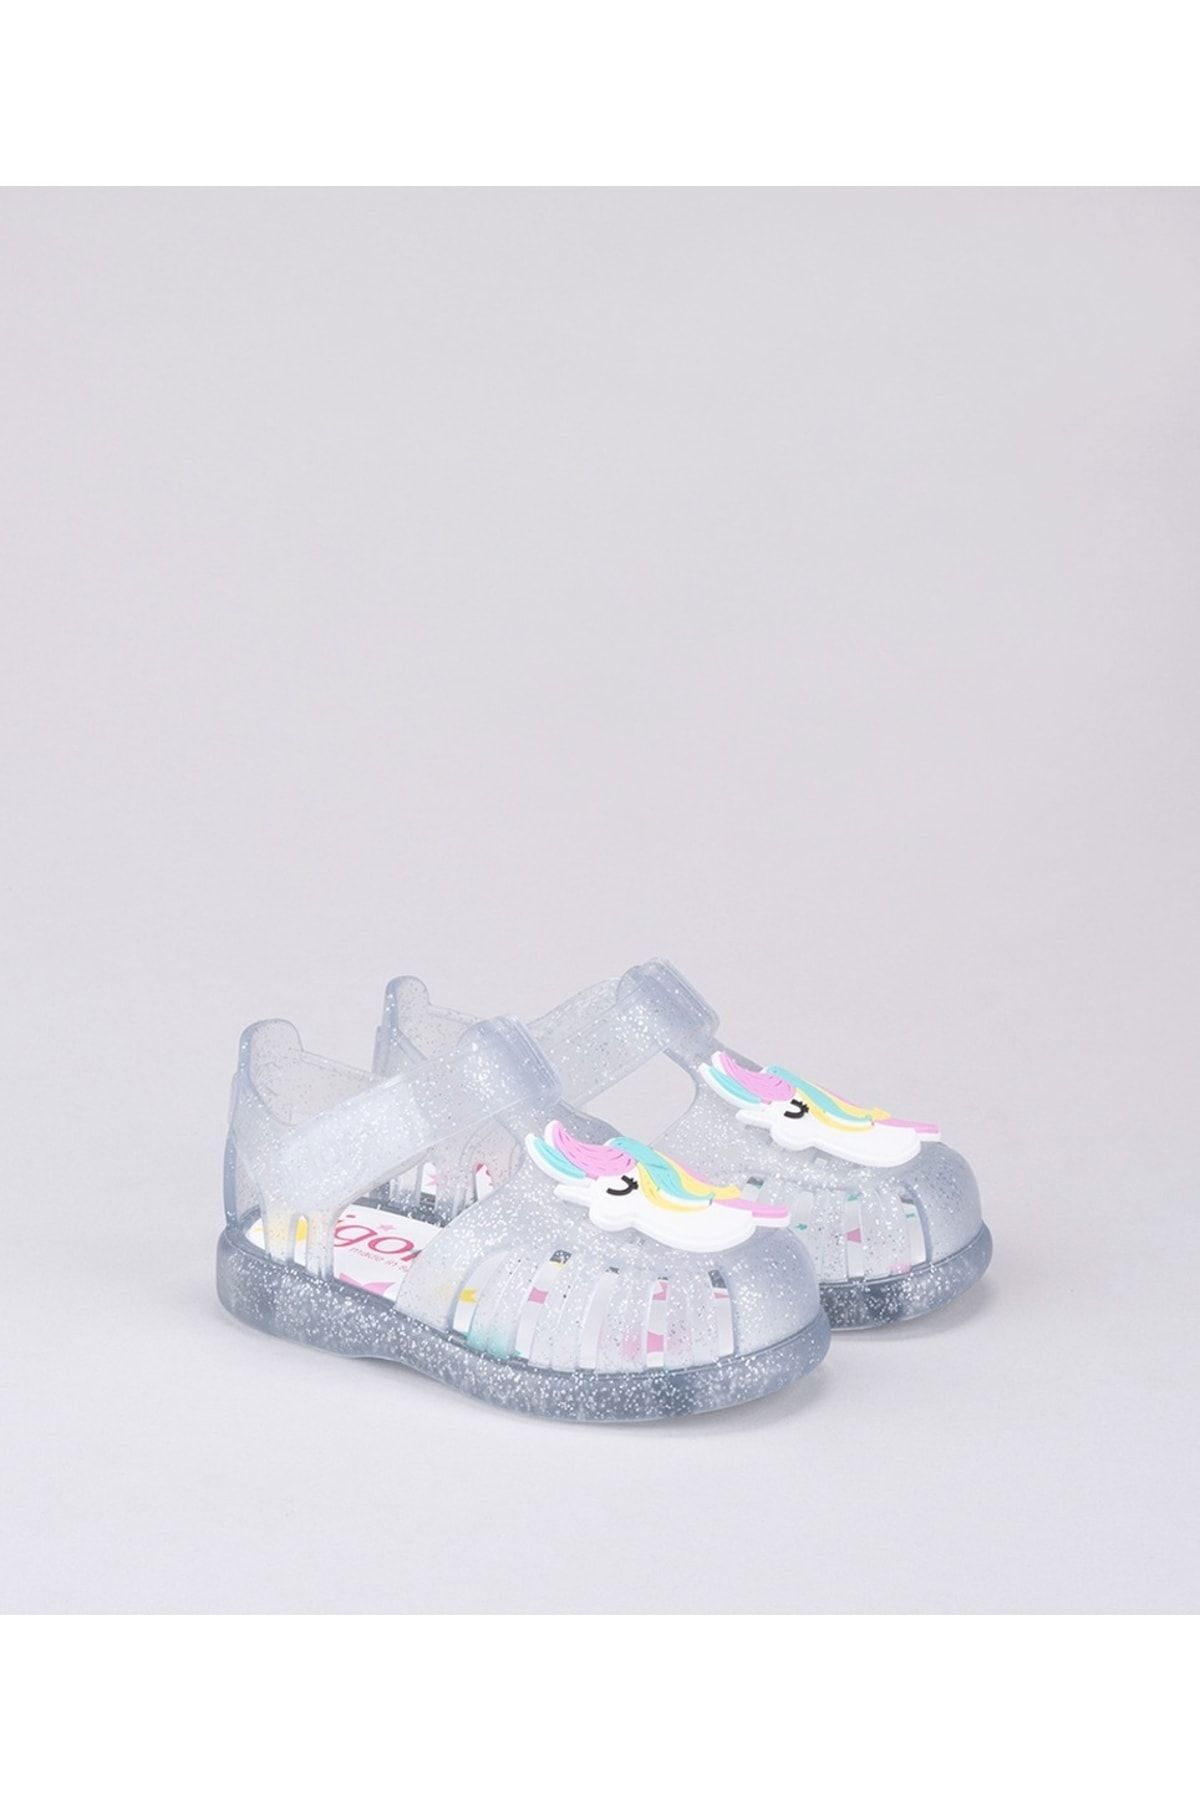 IGOR S10279 Tobby Unıcornıo Transparente Glitter Çocuk Sandalet 091